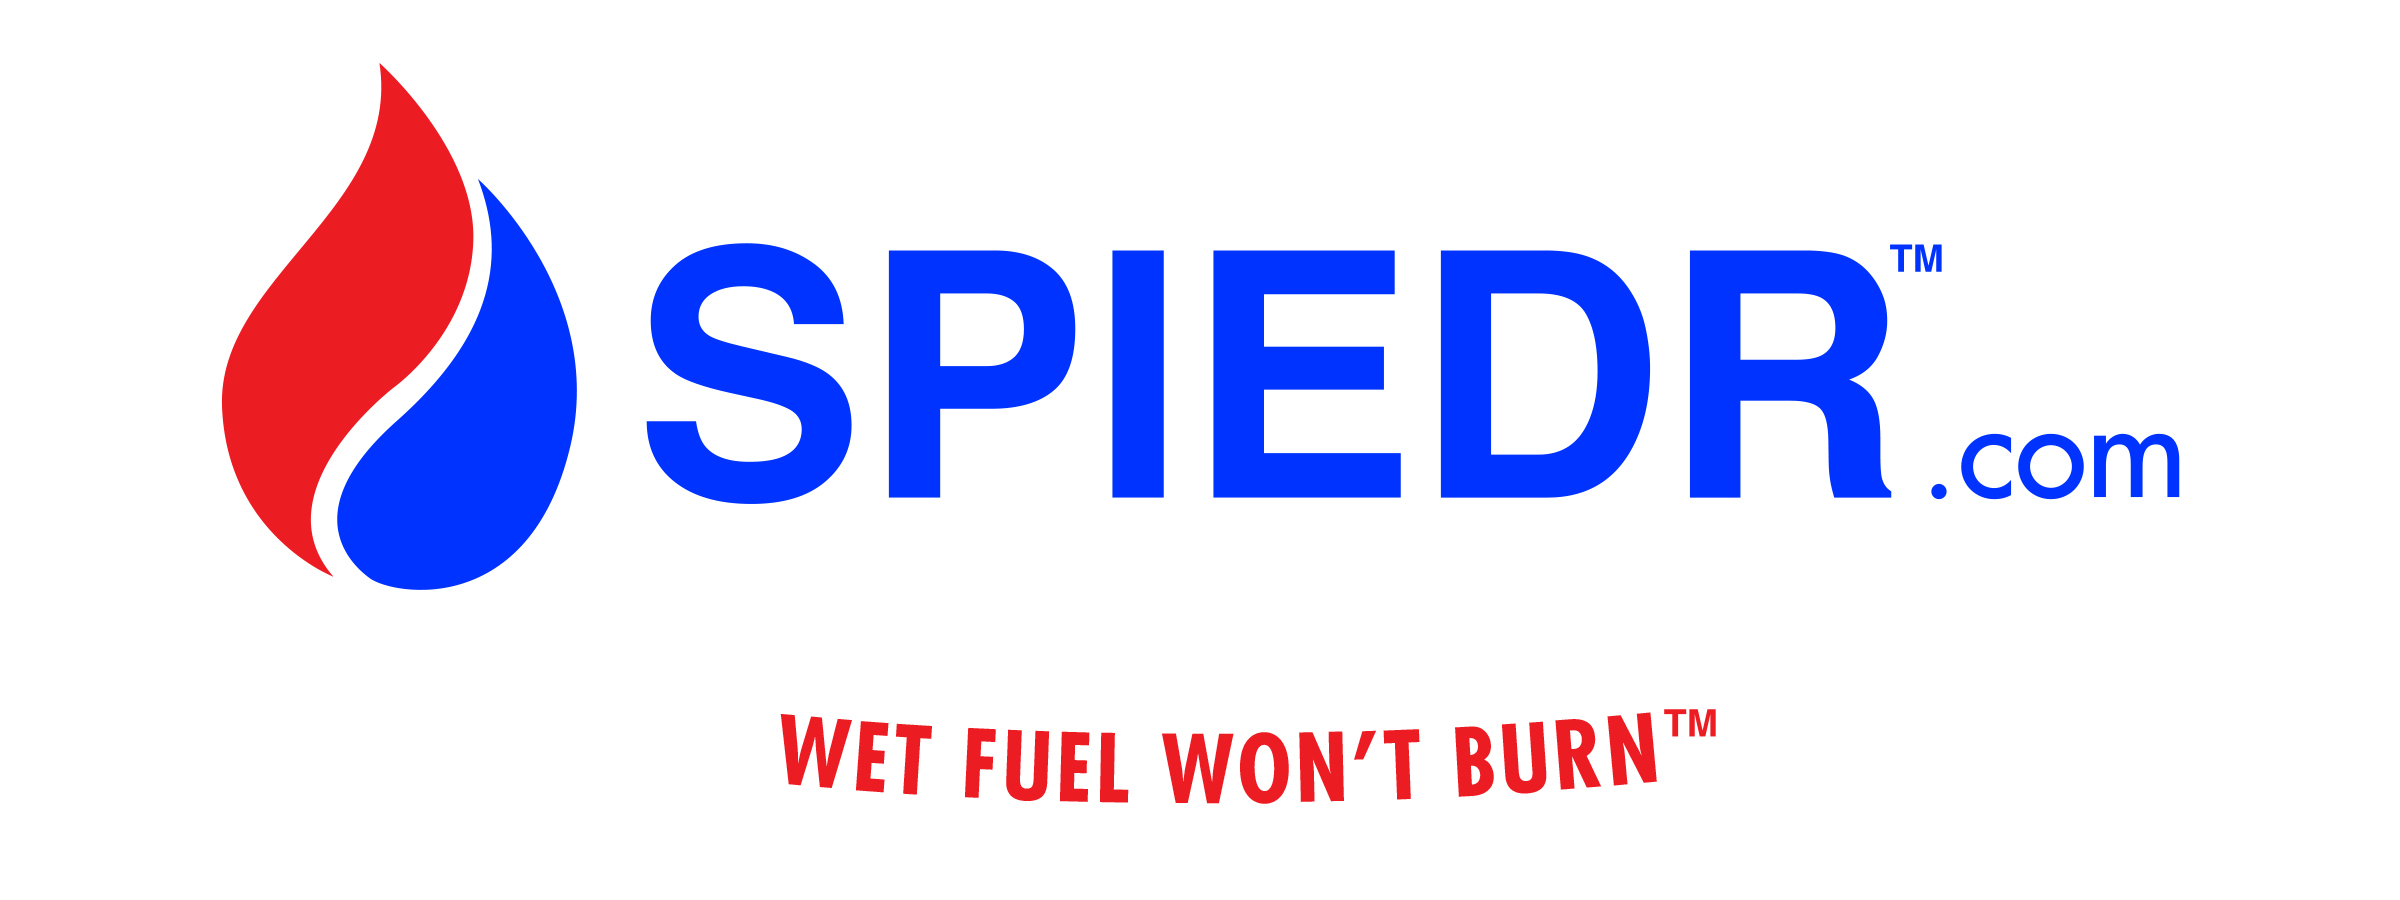 spiedr wet fuel won't burn